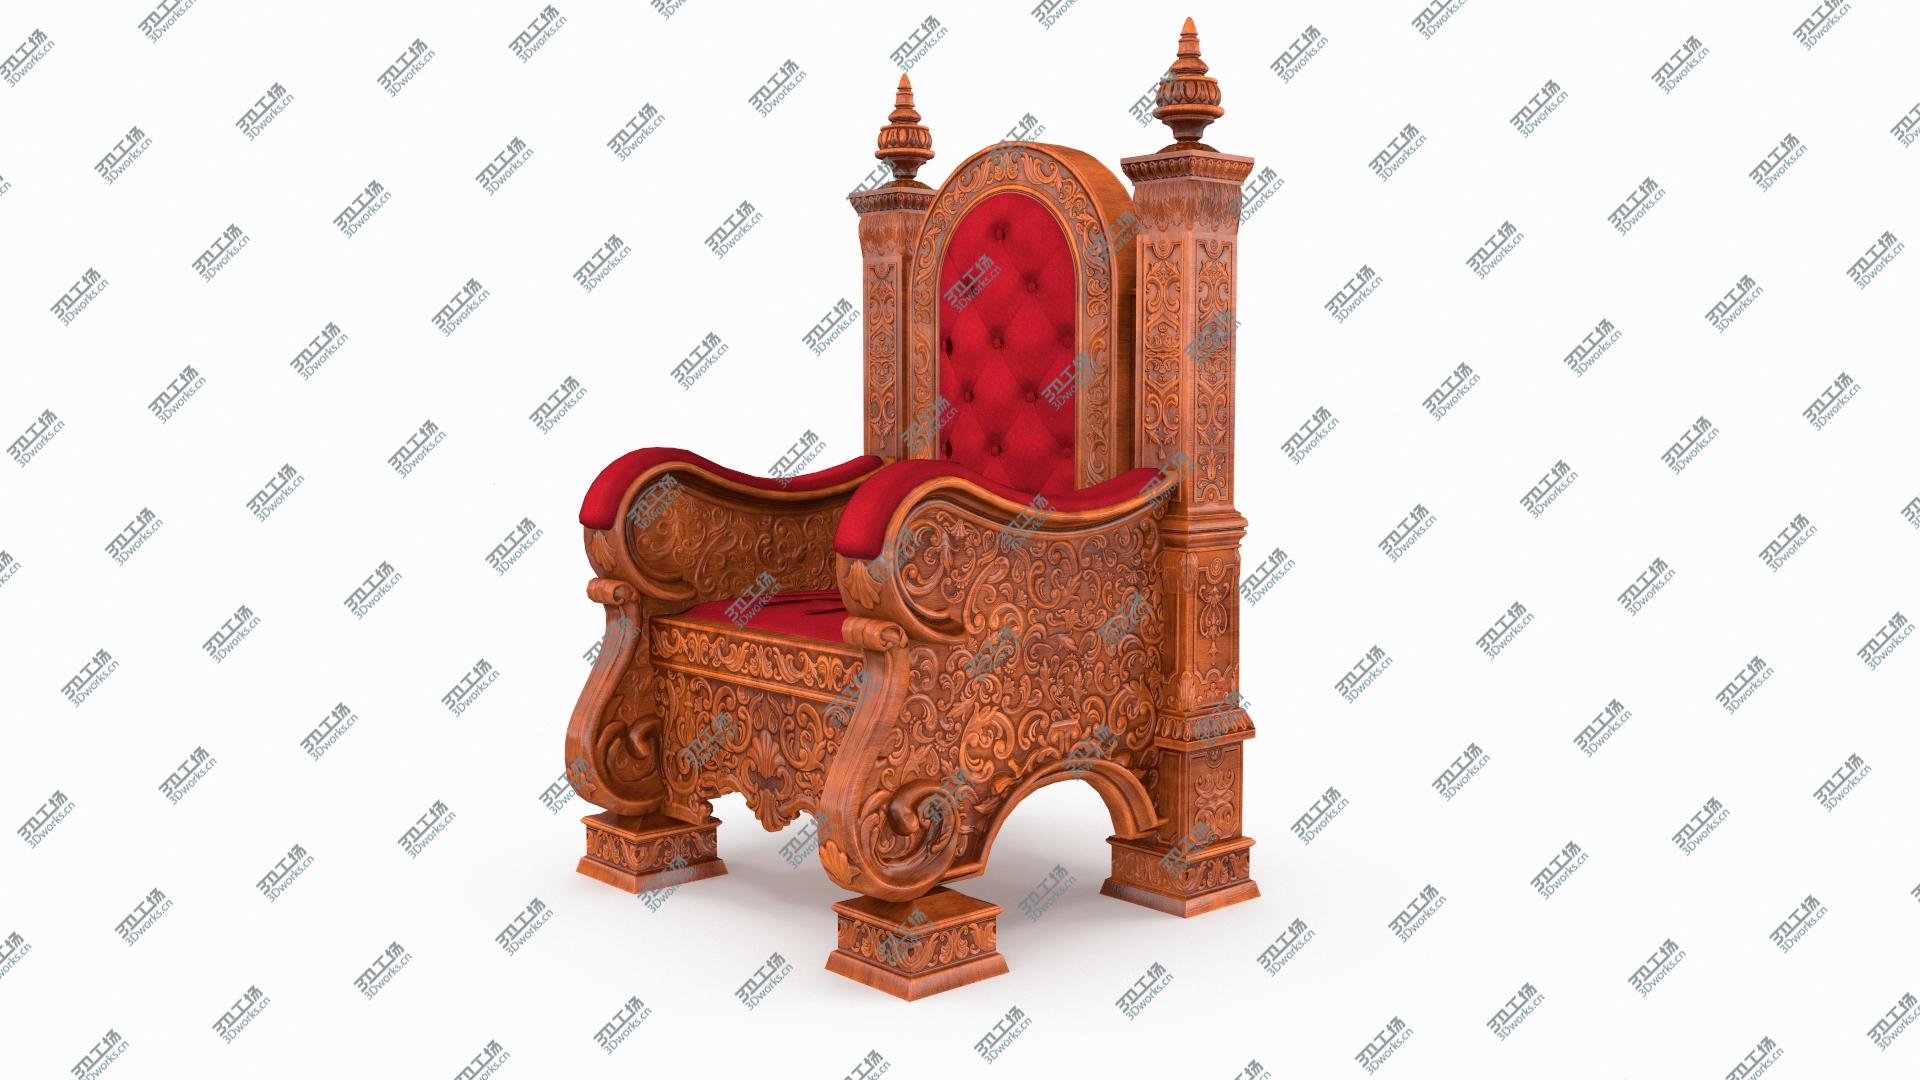 images/goods_img/202105074/Wooden Throne 3D model/4.jpg